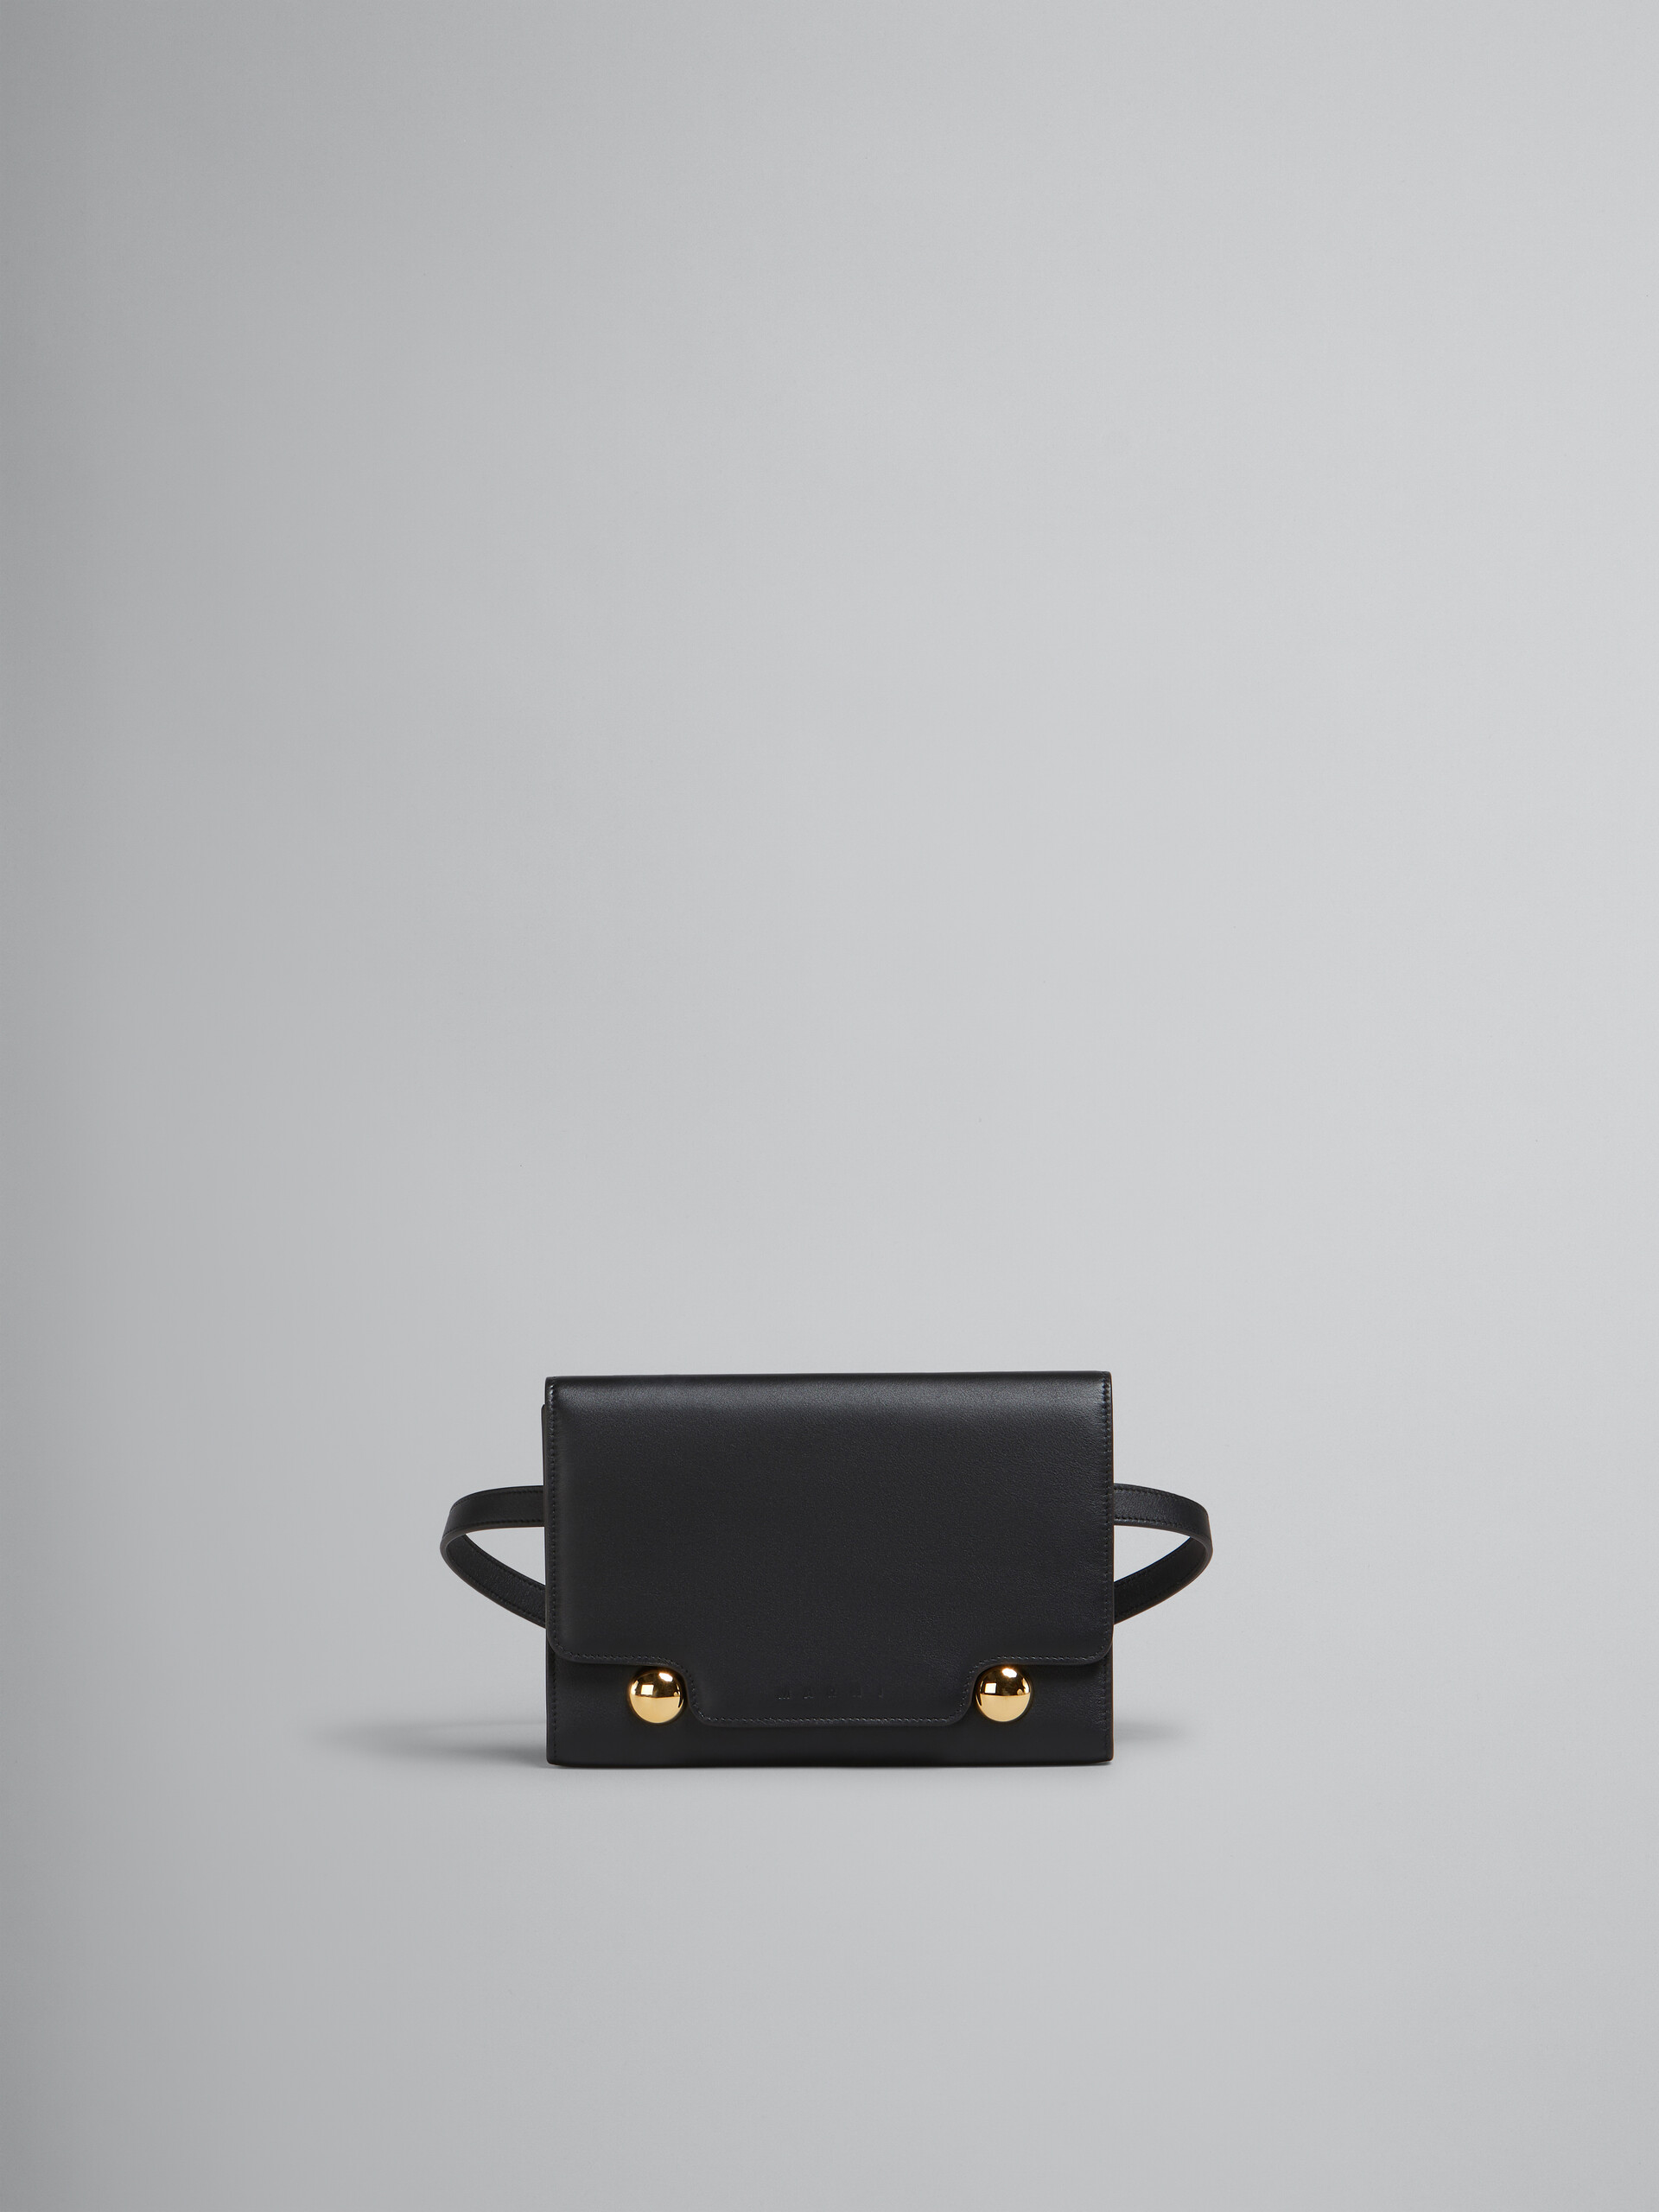 Black leather Trunkaroo bum bag - Belt Bag - Image 1